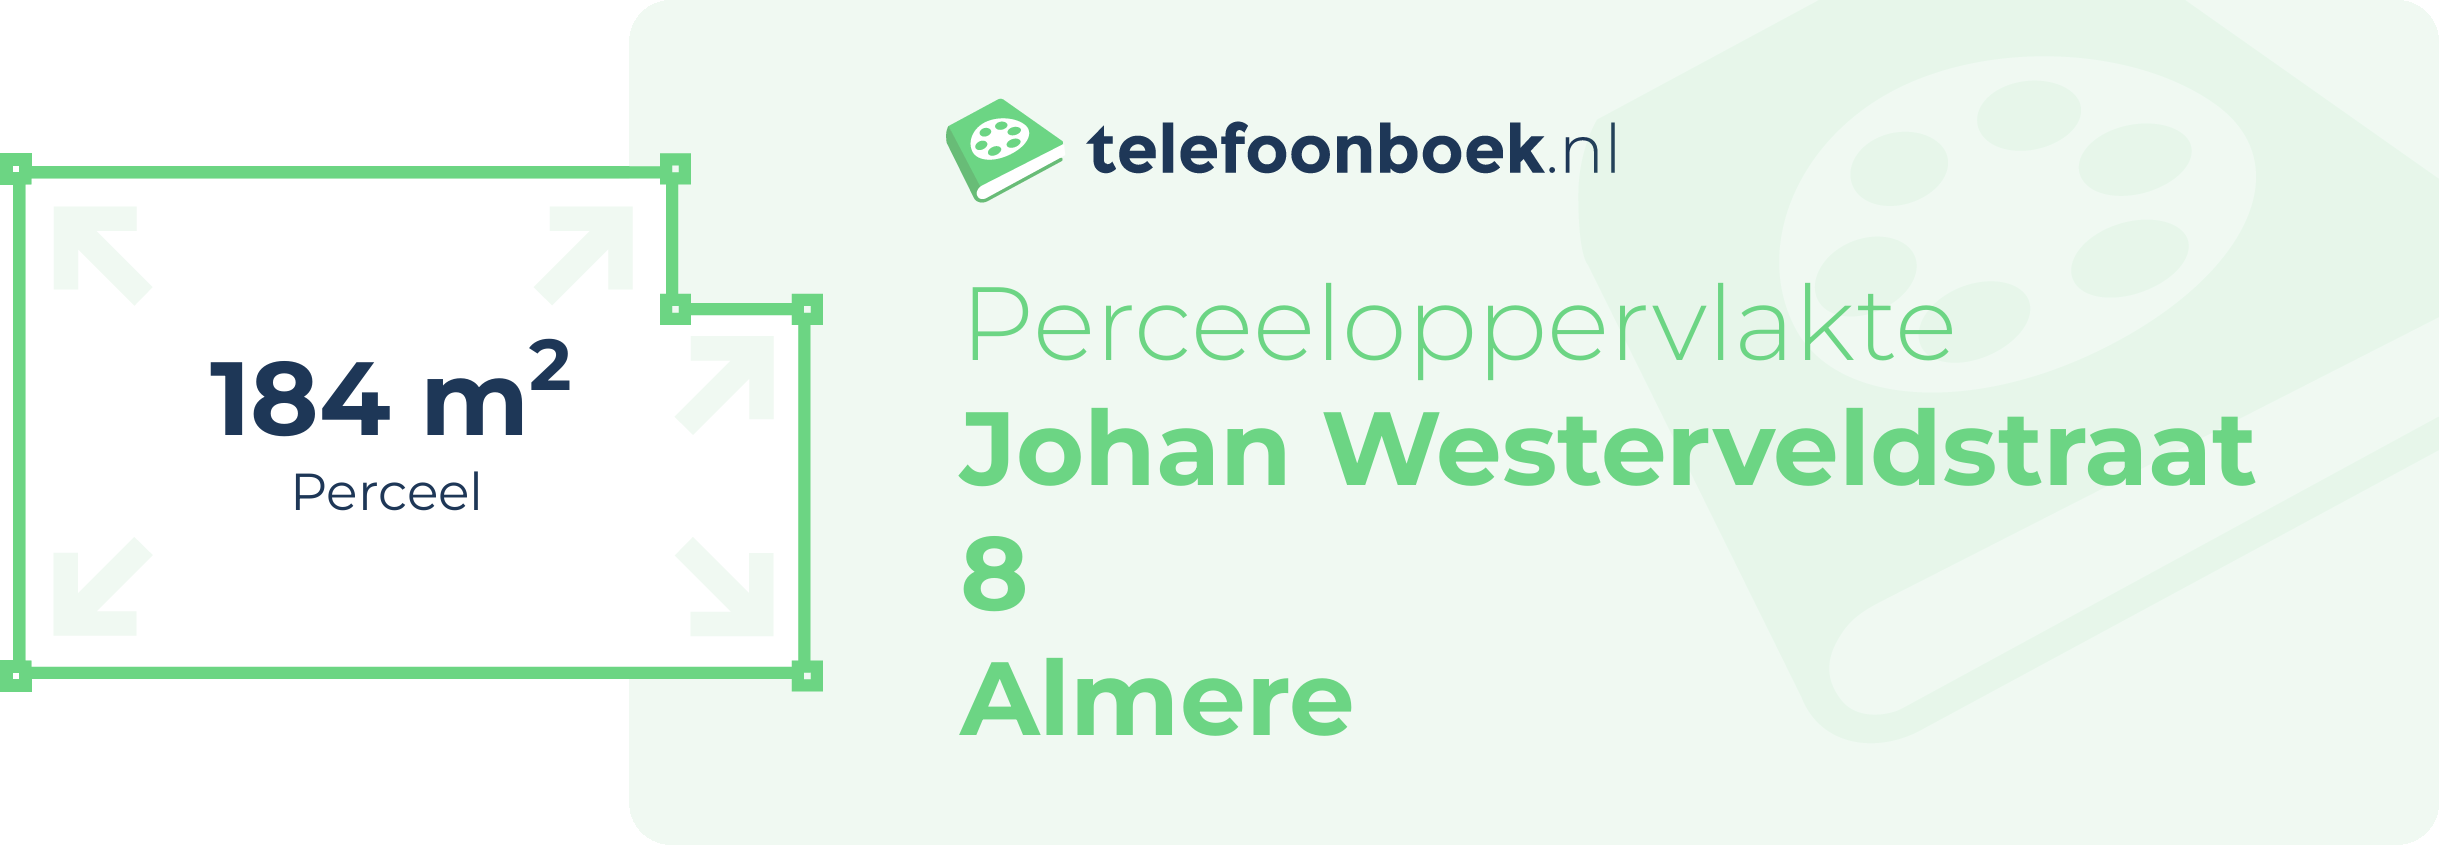 Perceeloppervlakte Johan Westerveldstraat 8 Almere